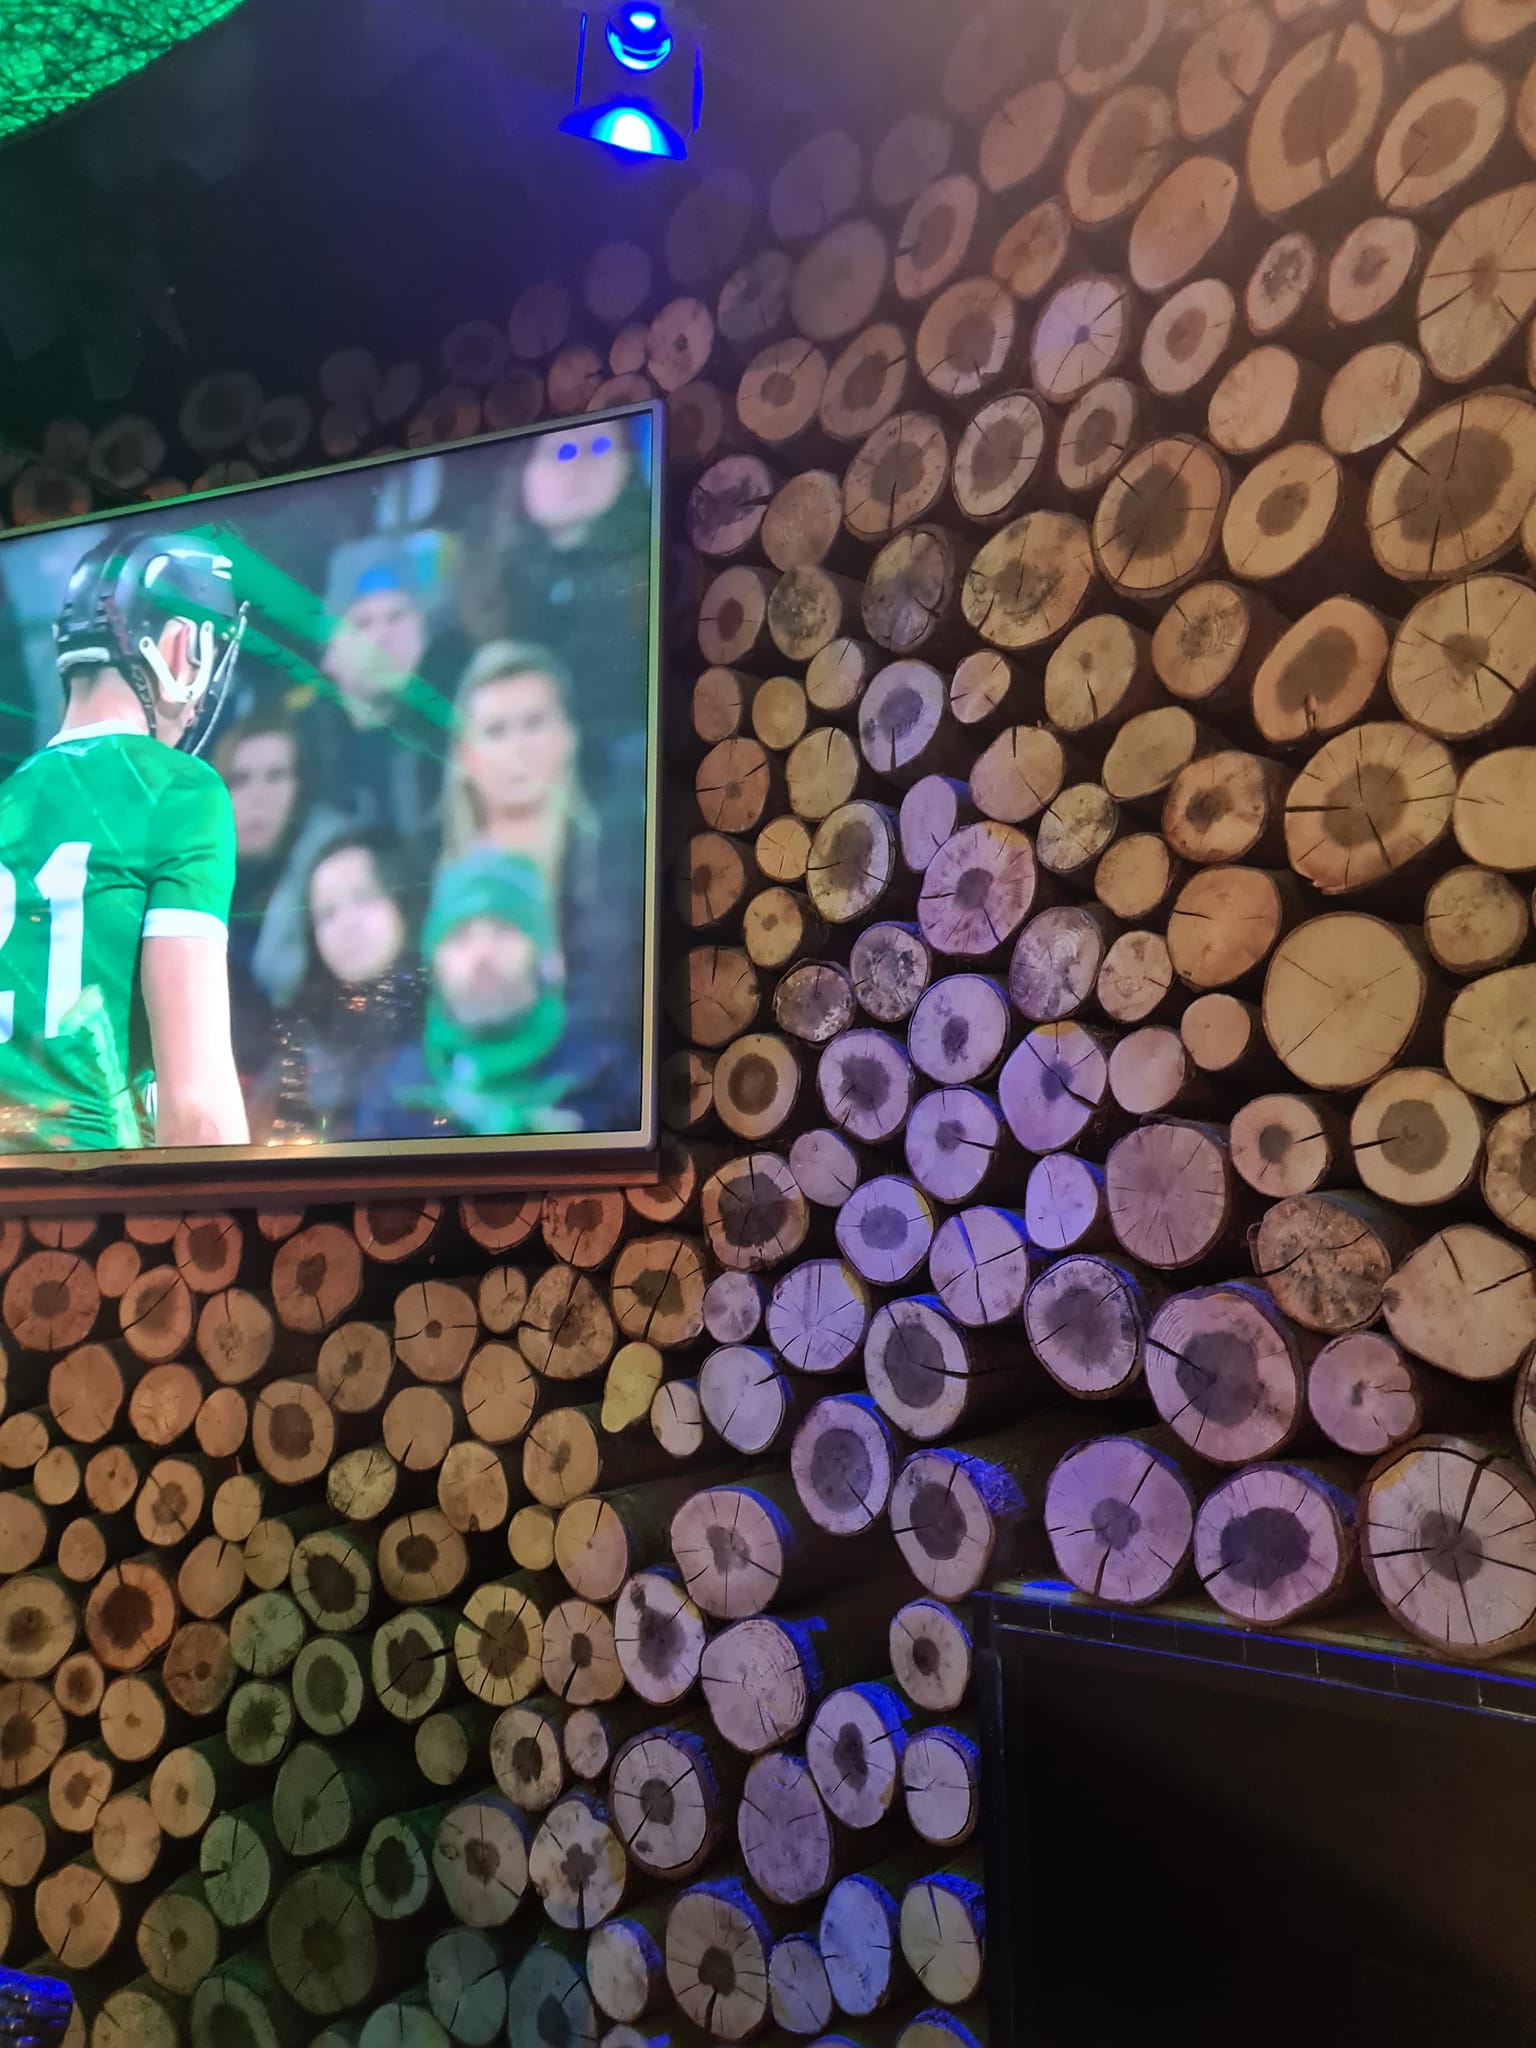 Ce mur caractéristique d’un pub en Irlande… Je ne me suis pas approchée, il avait l’air plutôt bien, mais je n’ose pas imaginer l’entretien qu’il nécessite.